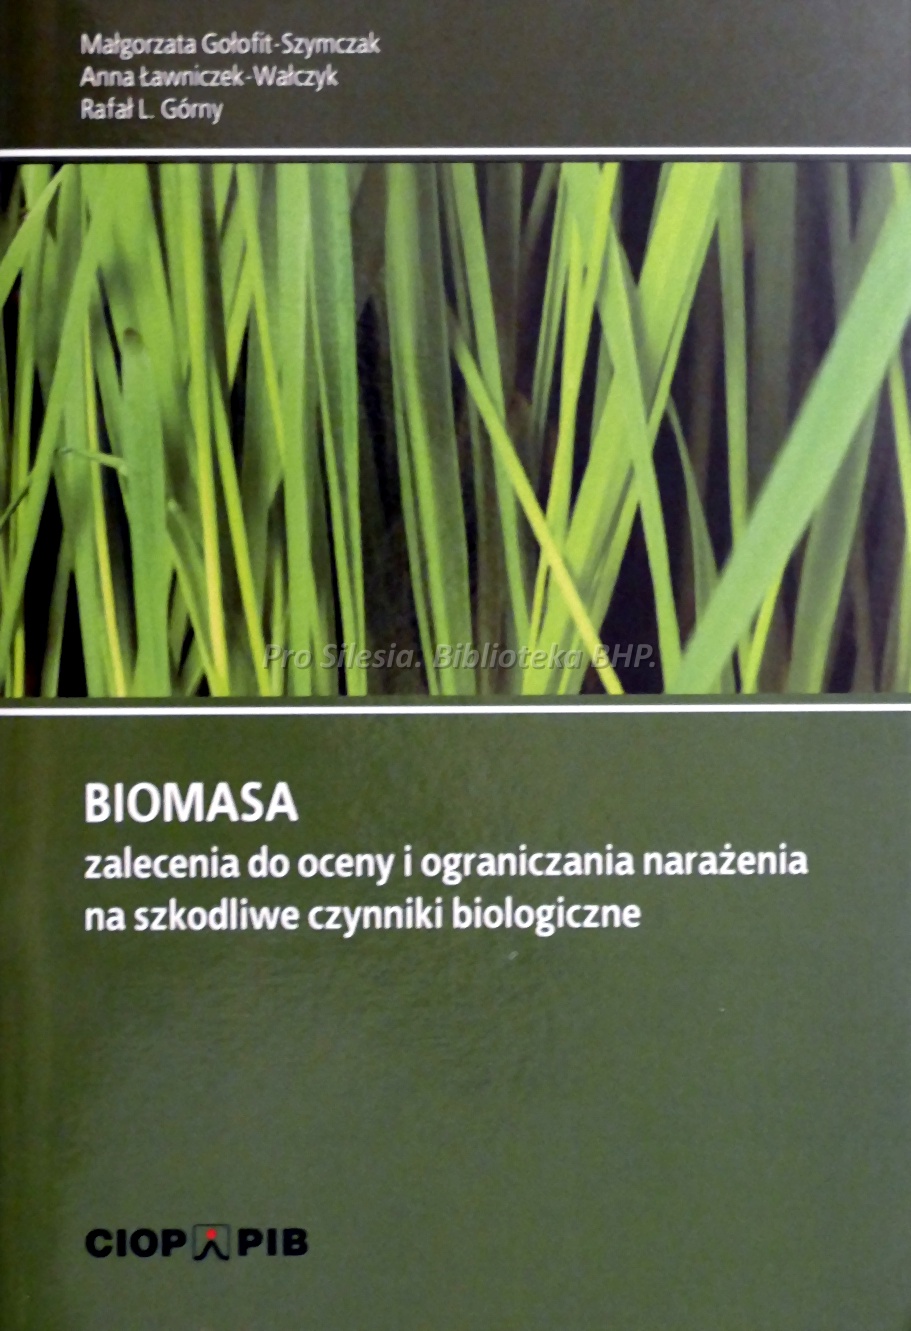 Biomasa zalecenia do oceny i ograniczania narażenia na szkodliwe czynniki biologiczne, wyd. CIOP-PIB